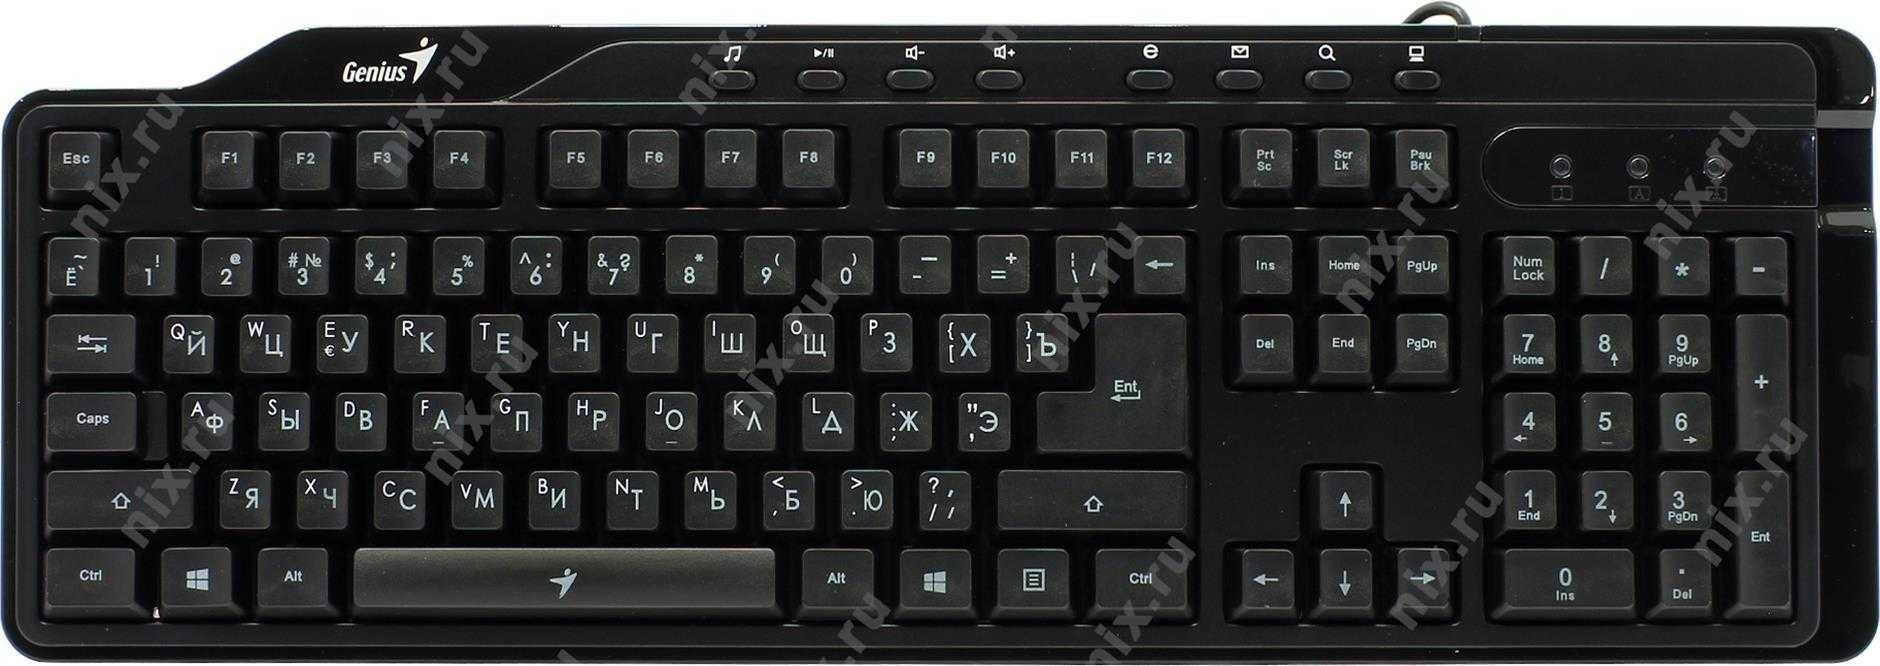 Клавиатура мышь комплект Genius KB-G255 Black USB - подробные характеристики обзоры видео фото Цены в интернет-магазинах где можно купить клавиатуру мышь комплект Genius KB-G255 Black USB